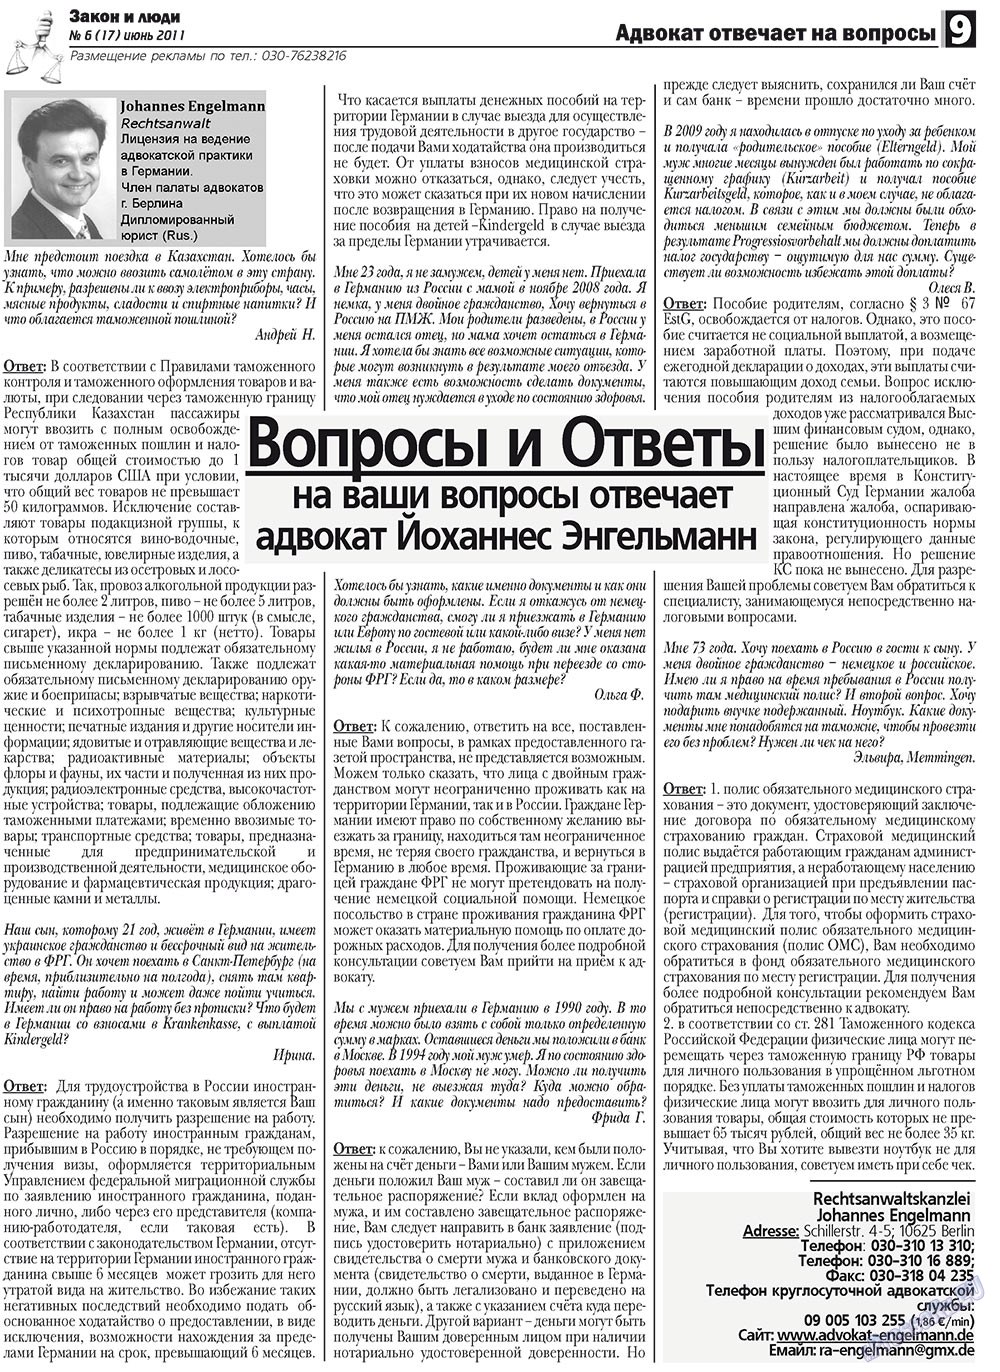 Закон и люди, газета. 2011 №6 стр.9